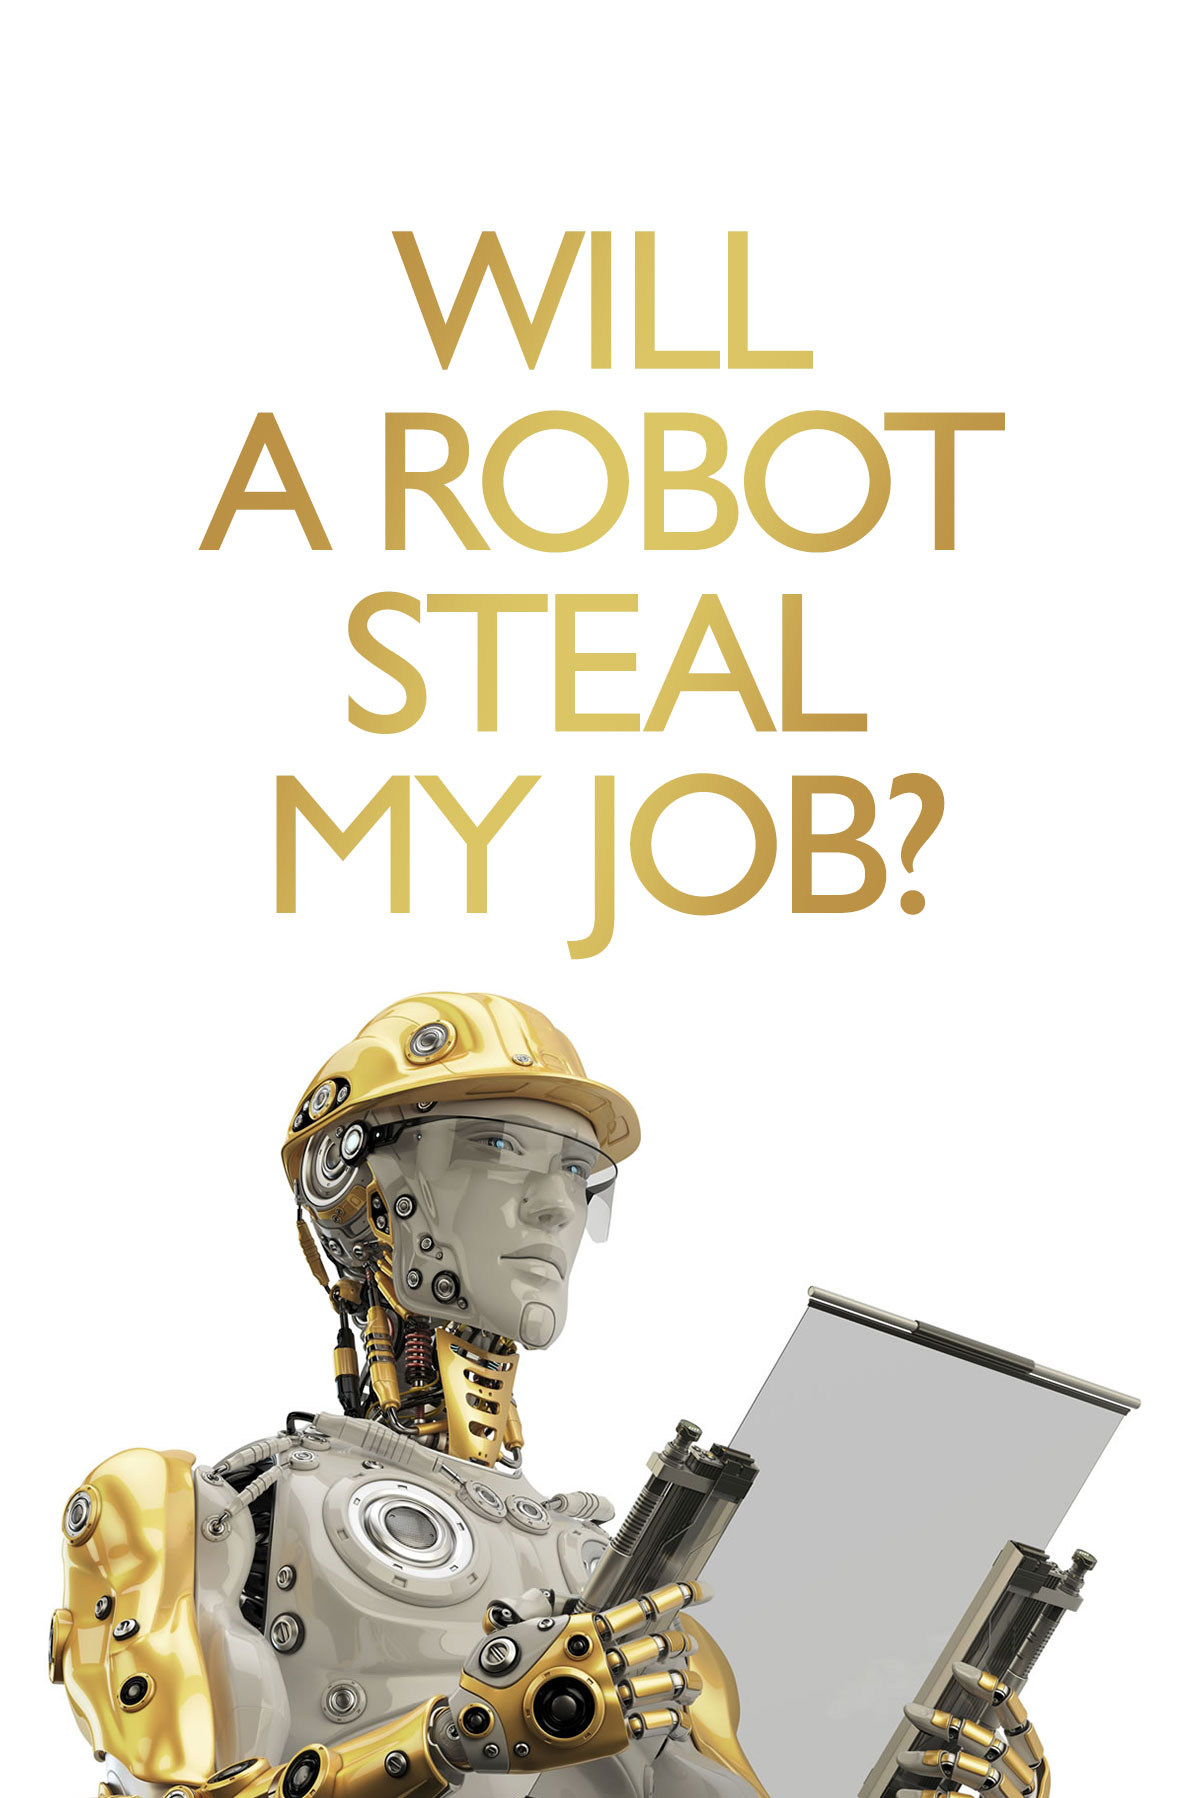 Will A Robot Steal My Job?